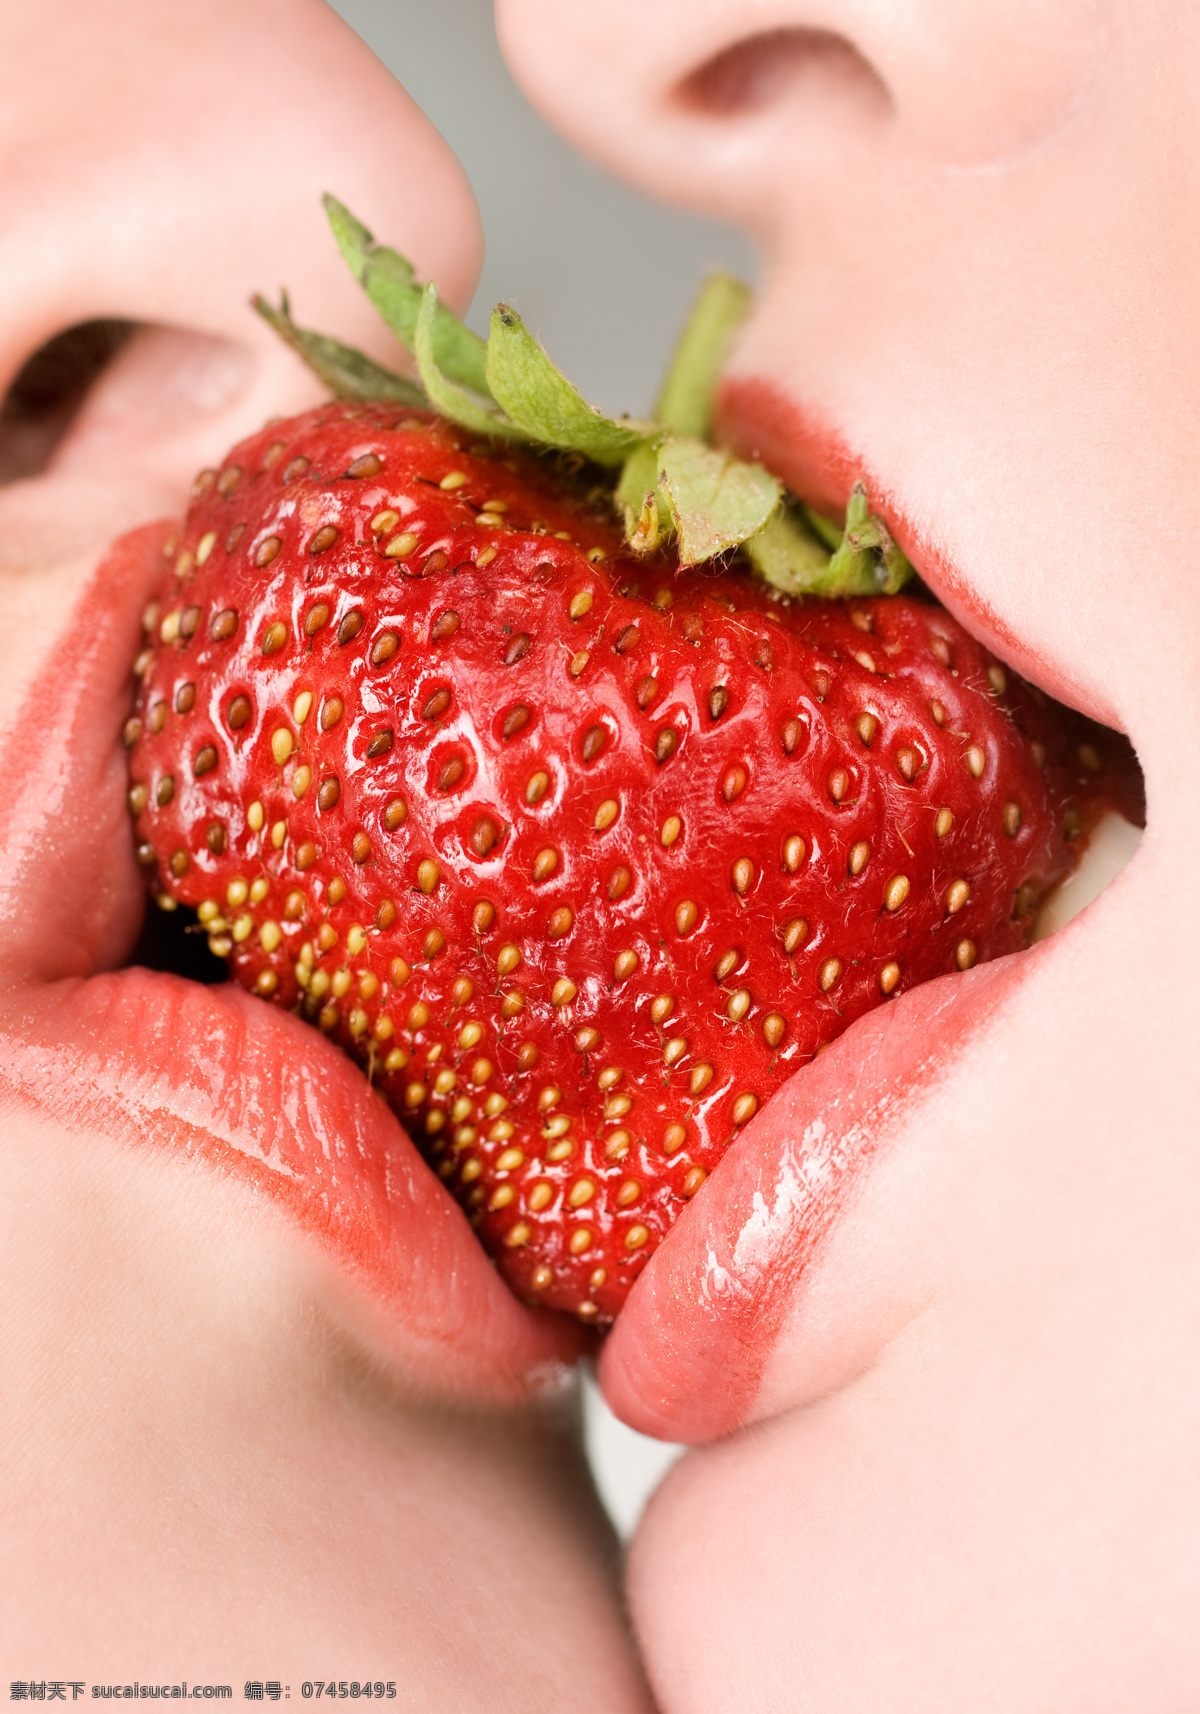 争 吃 草 霉 人物图片 美女 水果 吃水果的美女 女人 女性 嘴唇 高清图片 争吃 草霉 嘴对嘴 红唇 人体器官图